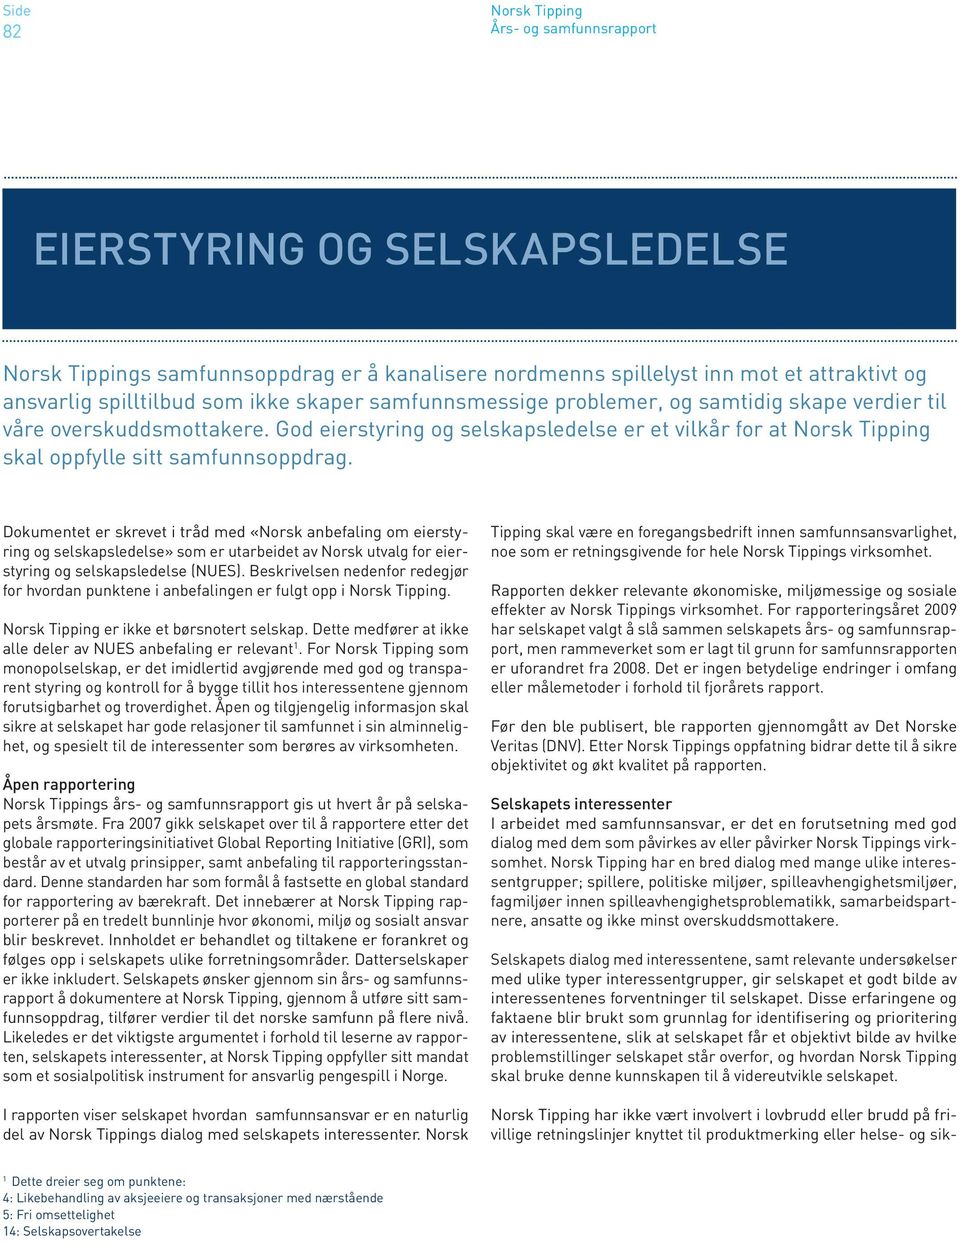 Dokumentet er skrevet i tråd med «Norsk anbefaling om eierstyring og selskapsledelse» som er utarbeidet av Norsk utvalg for eierstyring og selskapsledelse (NUES).